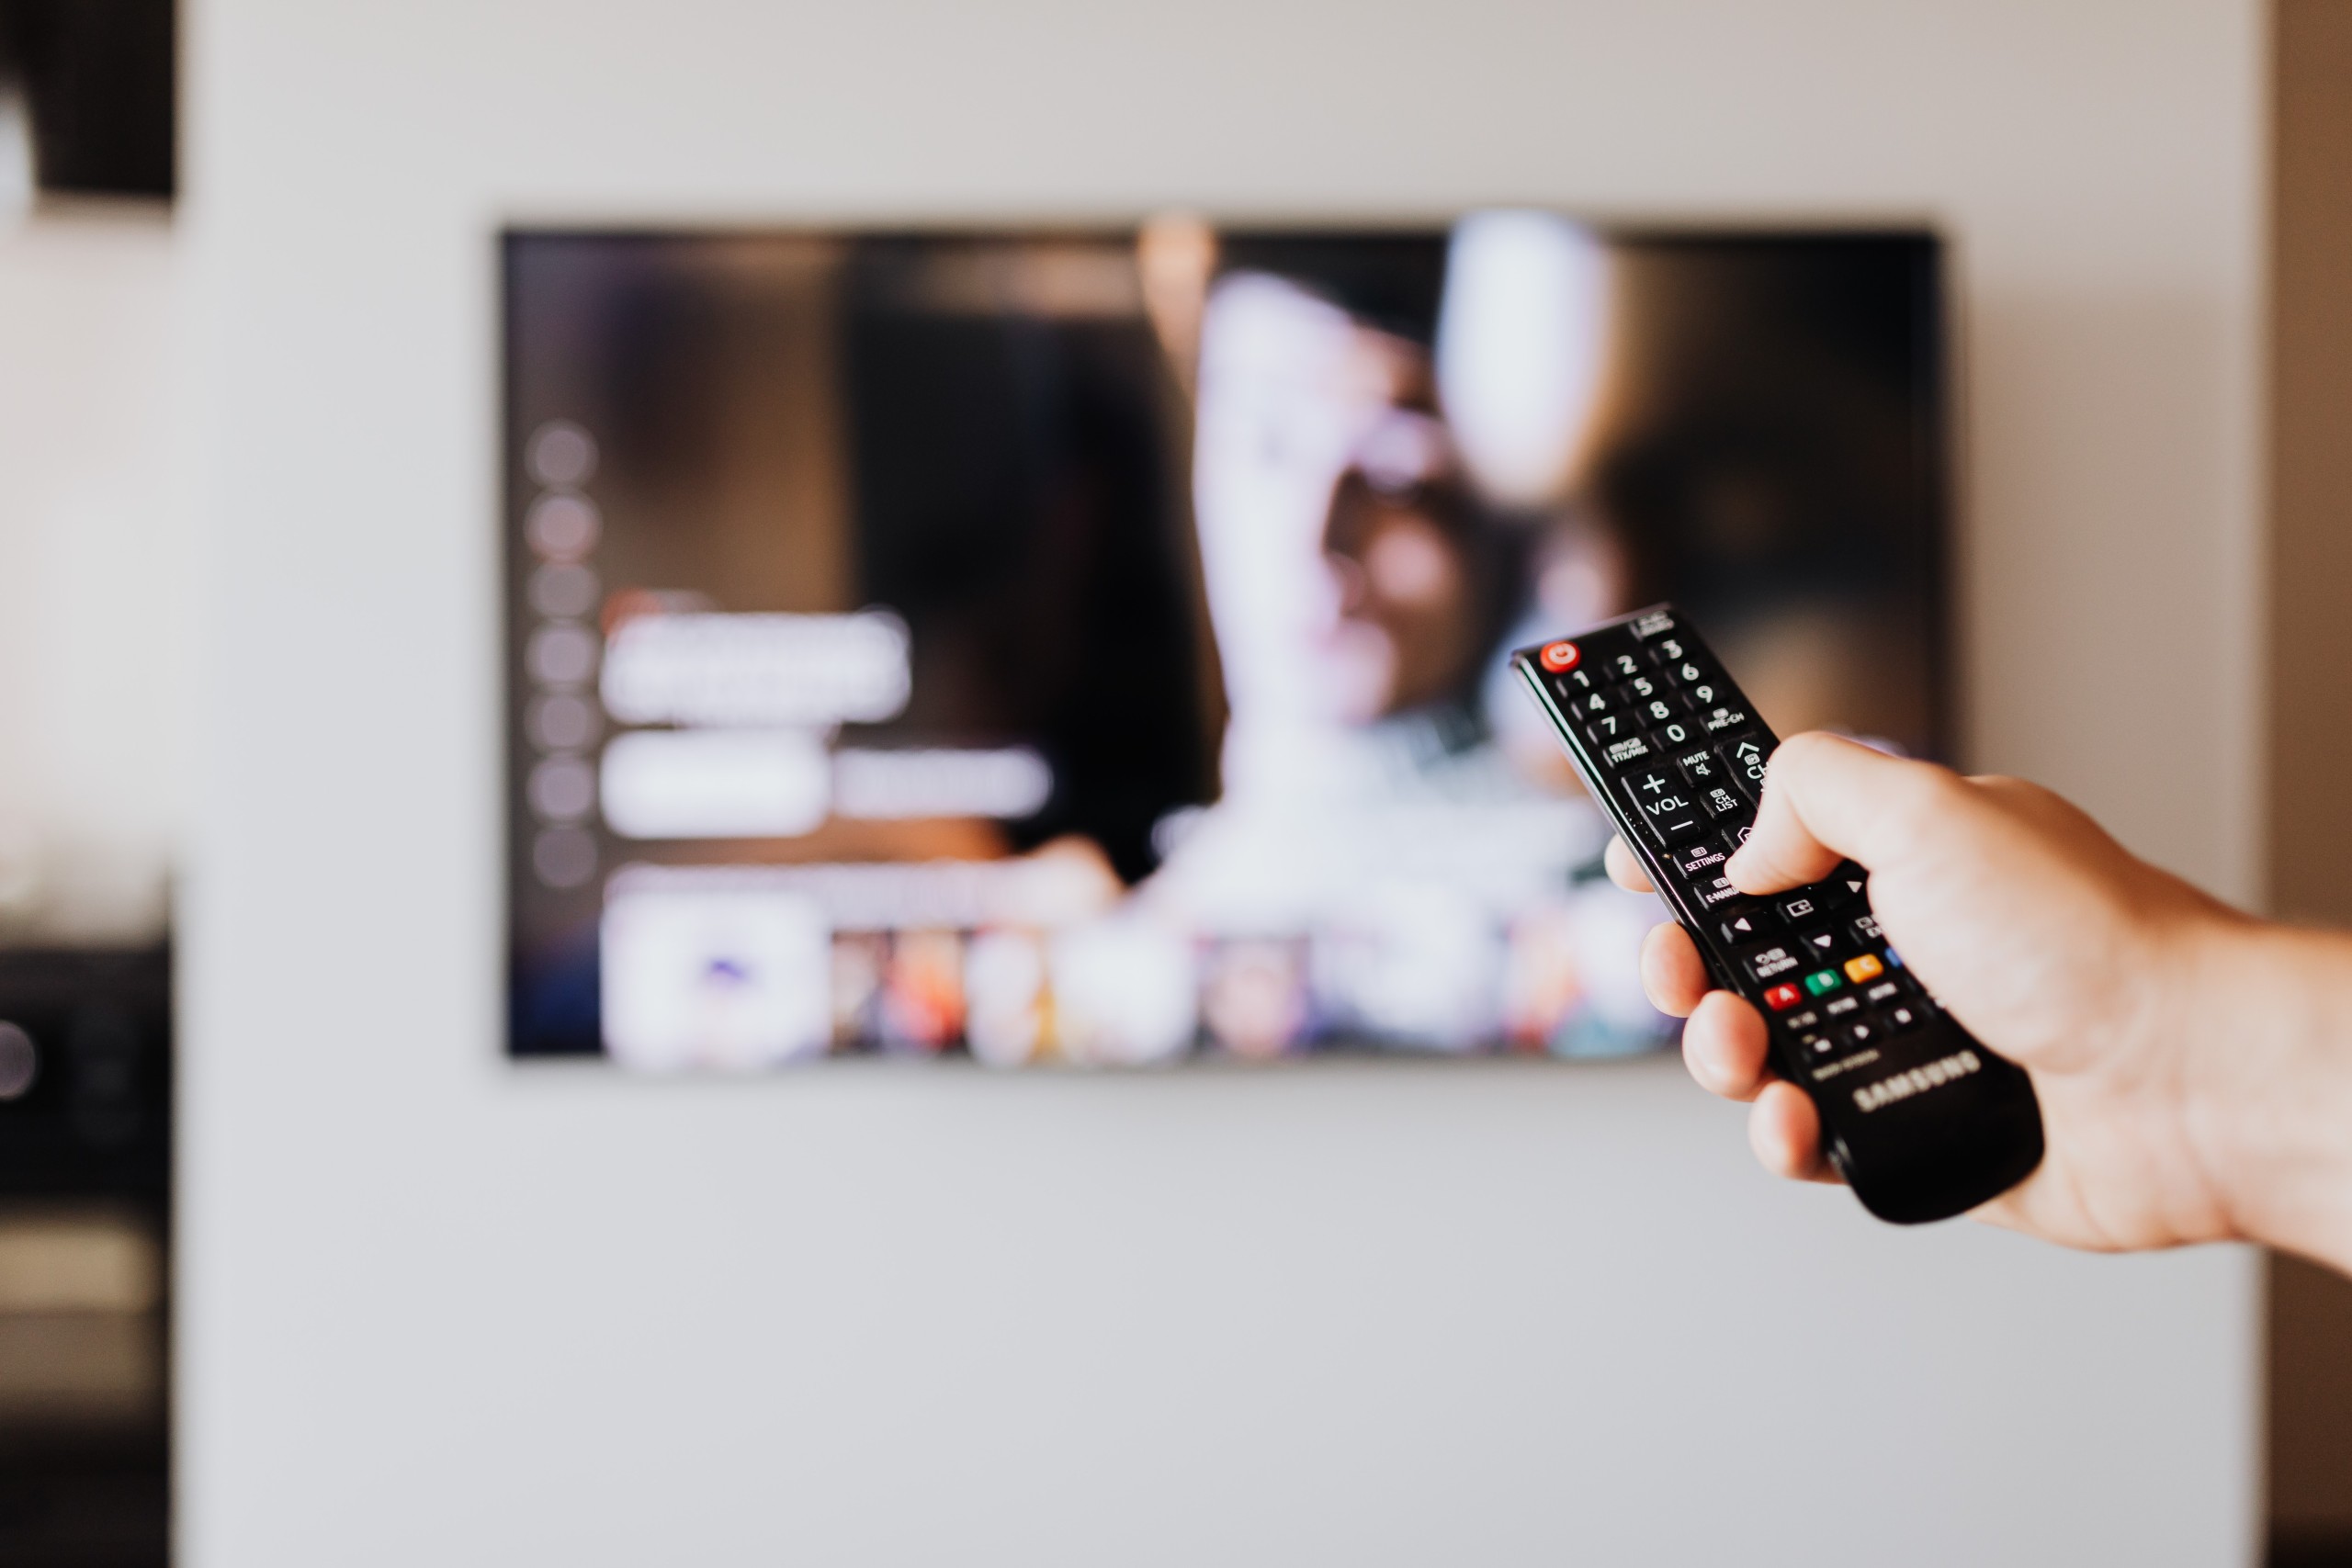 Activate TV Code on Smart TV 